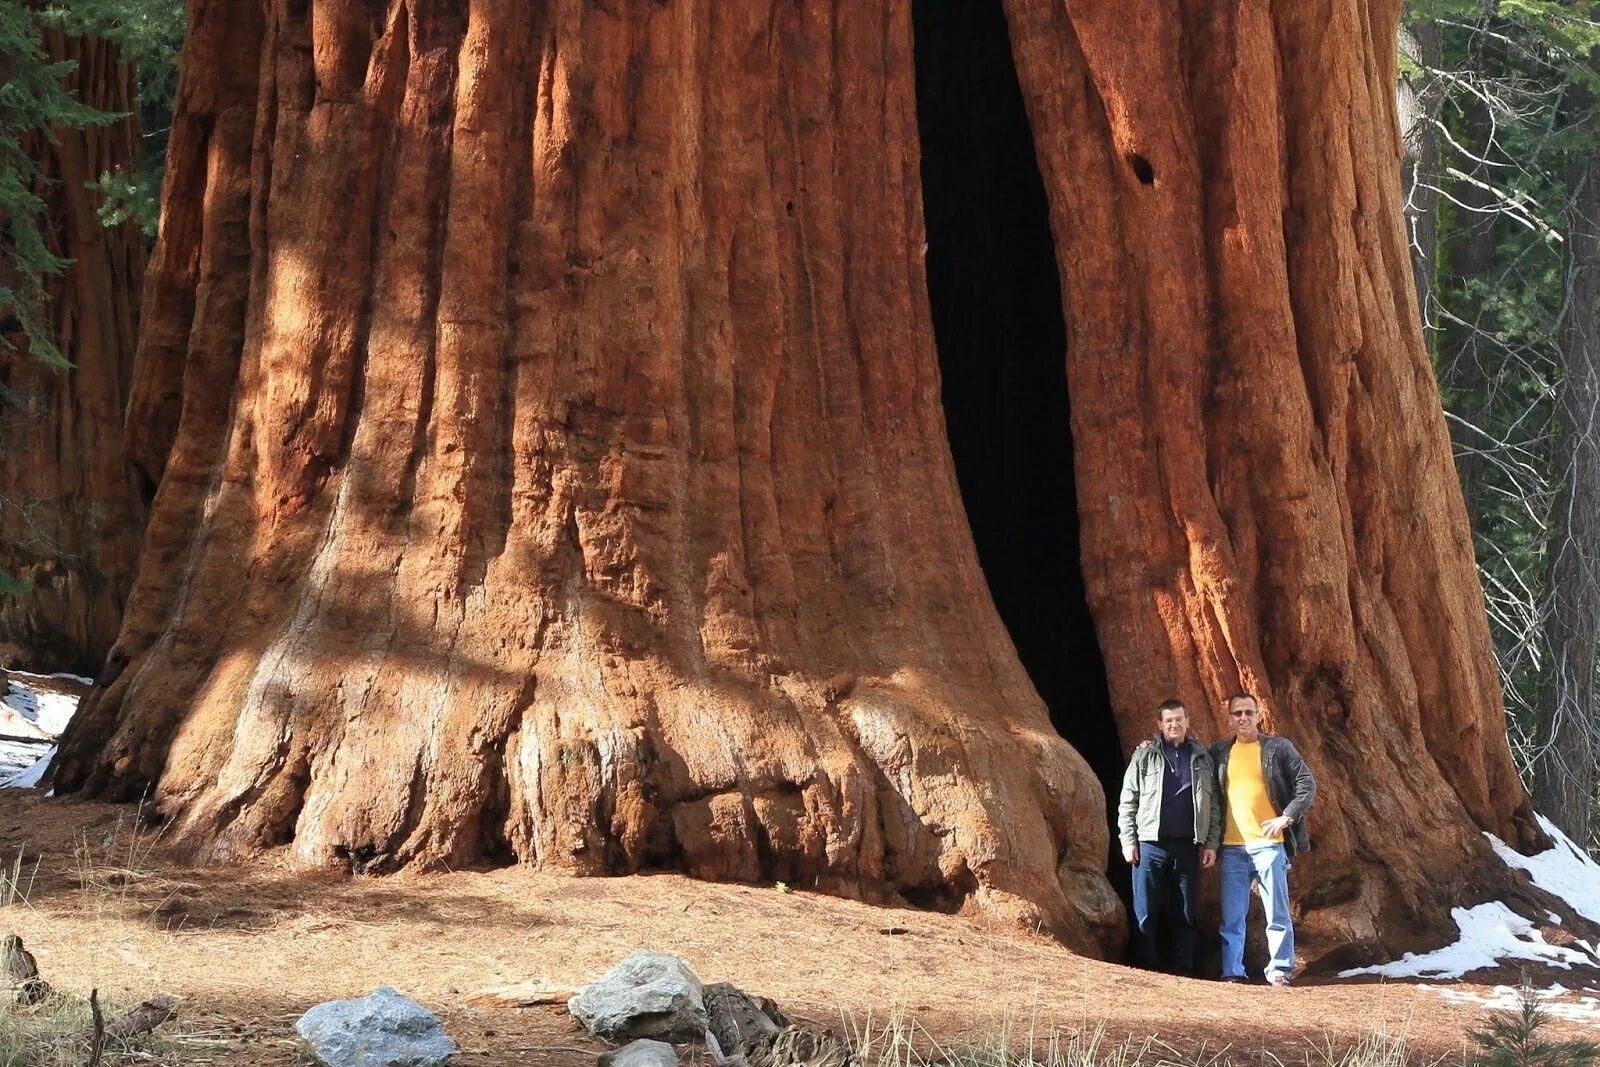 Секвойя дерево. Национальный парк «Секвойя», штат Калифорния, США. Генерал Шерман (дерево). Секвойядендрон генерал Шерман. Громадный это какой